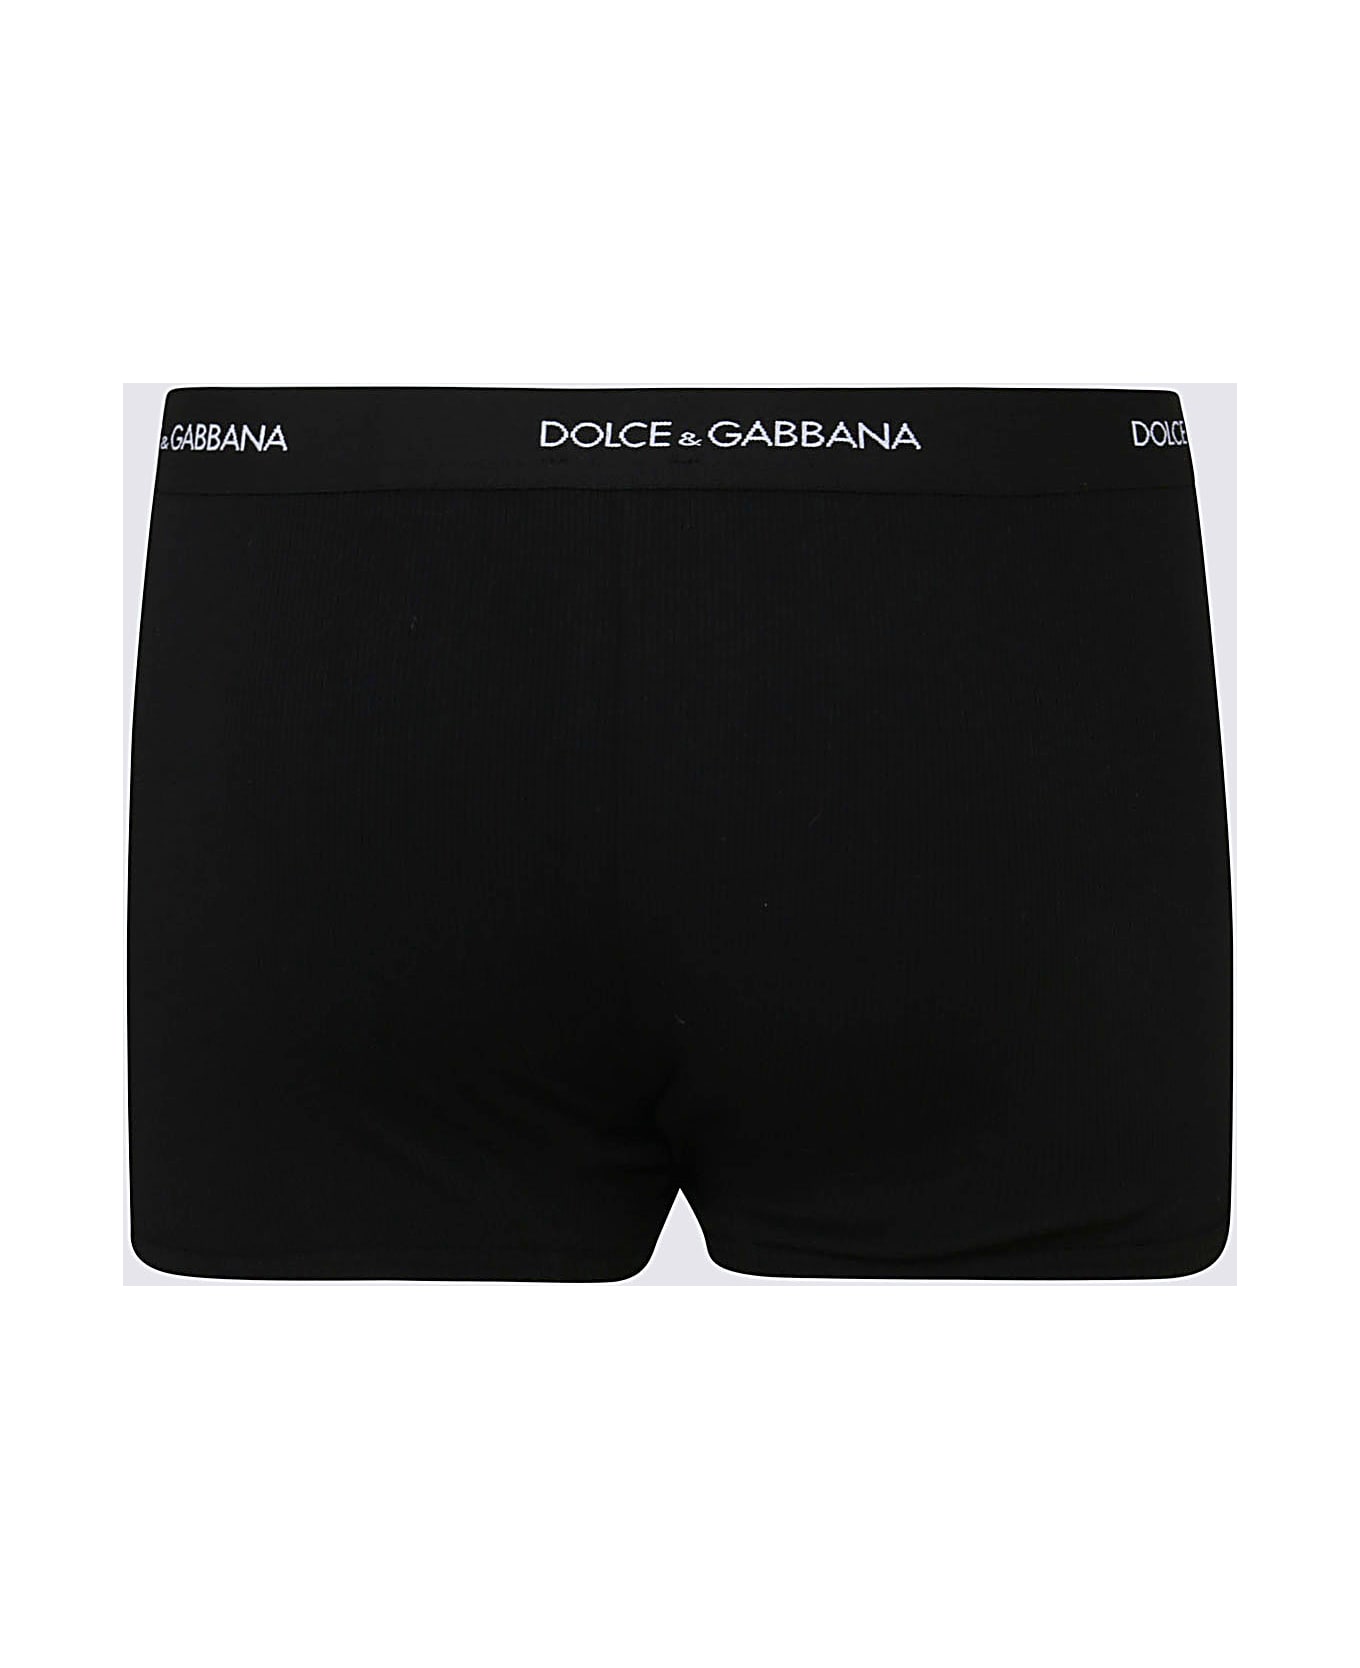 Dolce & Gabbana Black Cotton Boxers - NERO